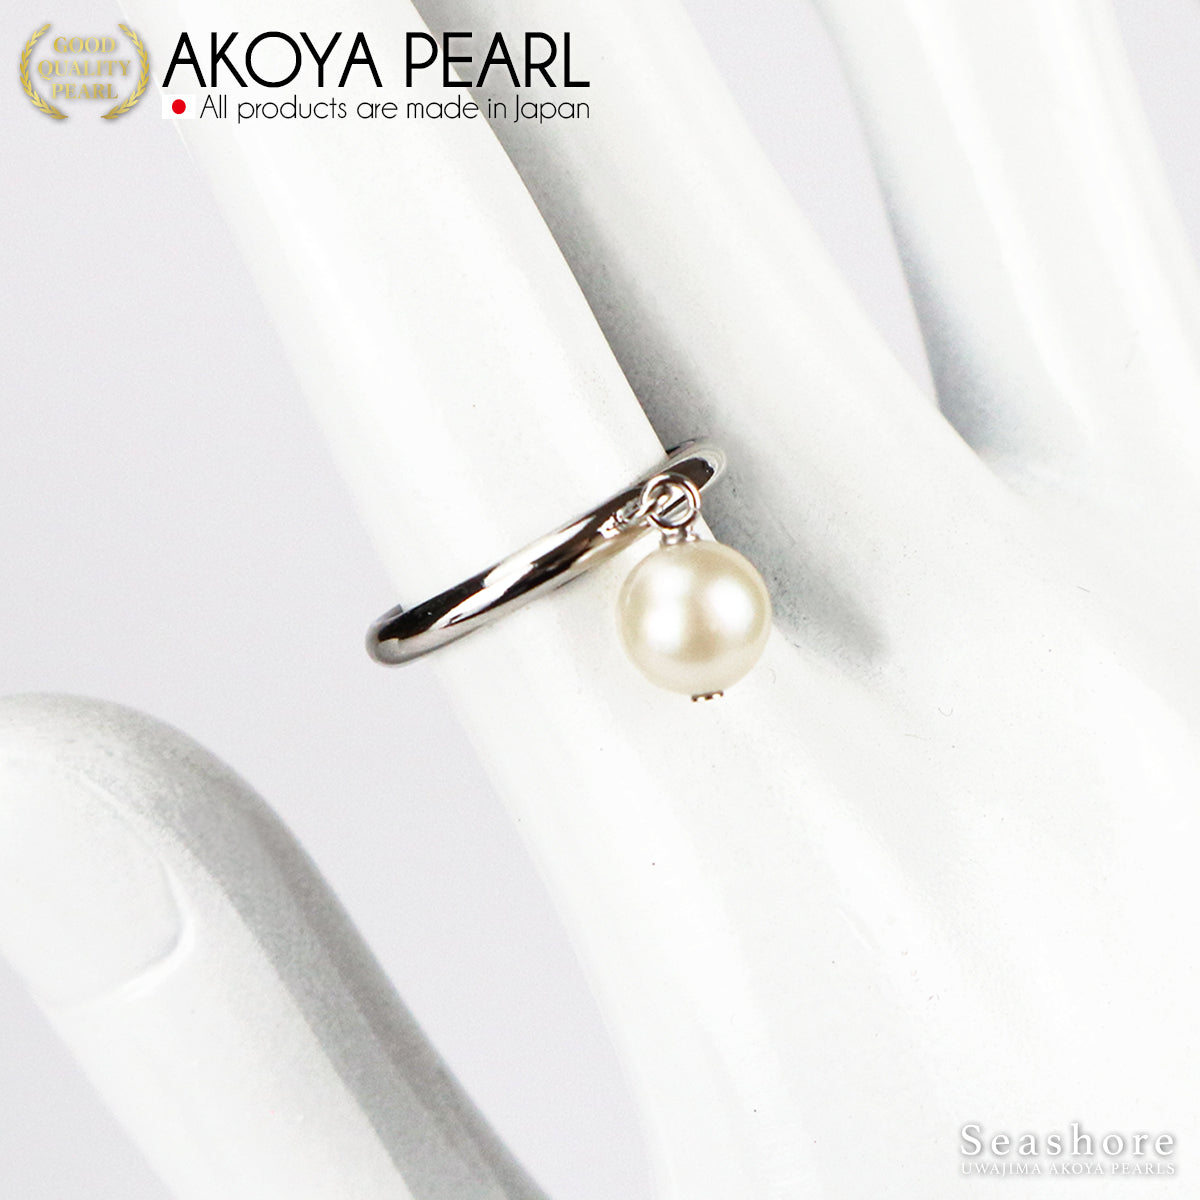 珍珠戒指摆动式黄铜铑均码 6.5-7.5 毫米 Akoya 珍珠 (3935)